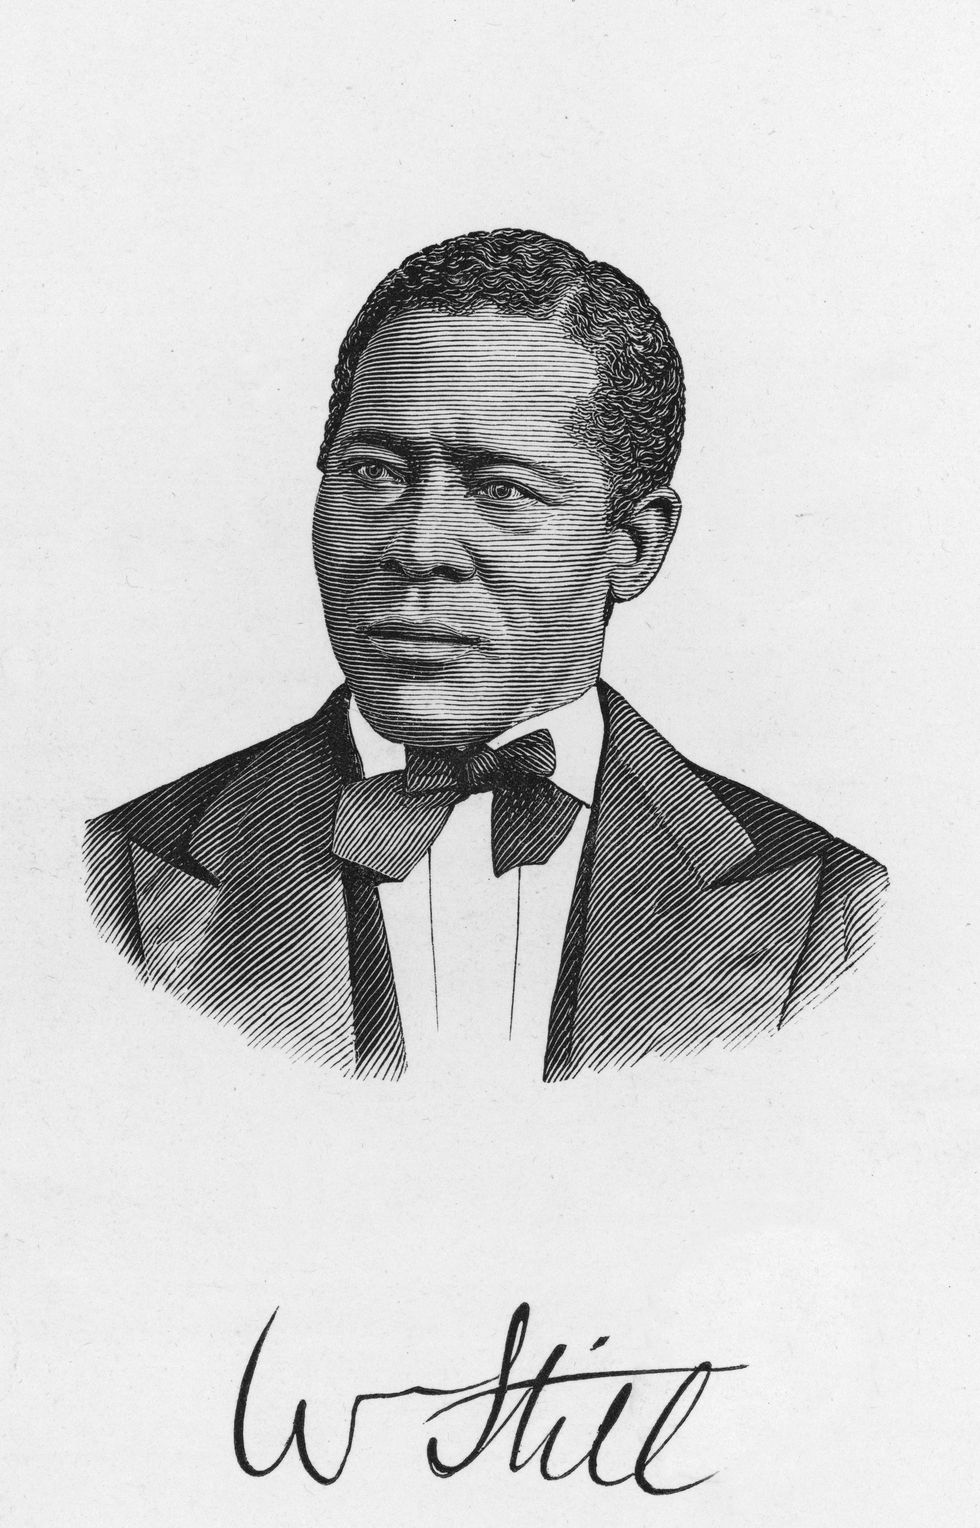 William Still, the Underground Railroad